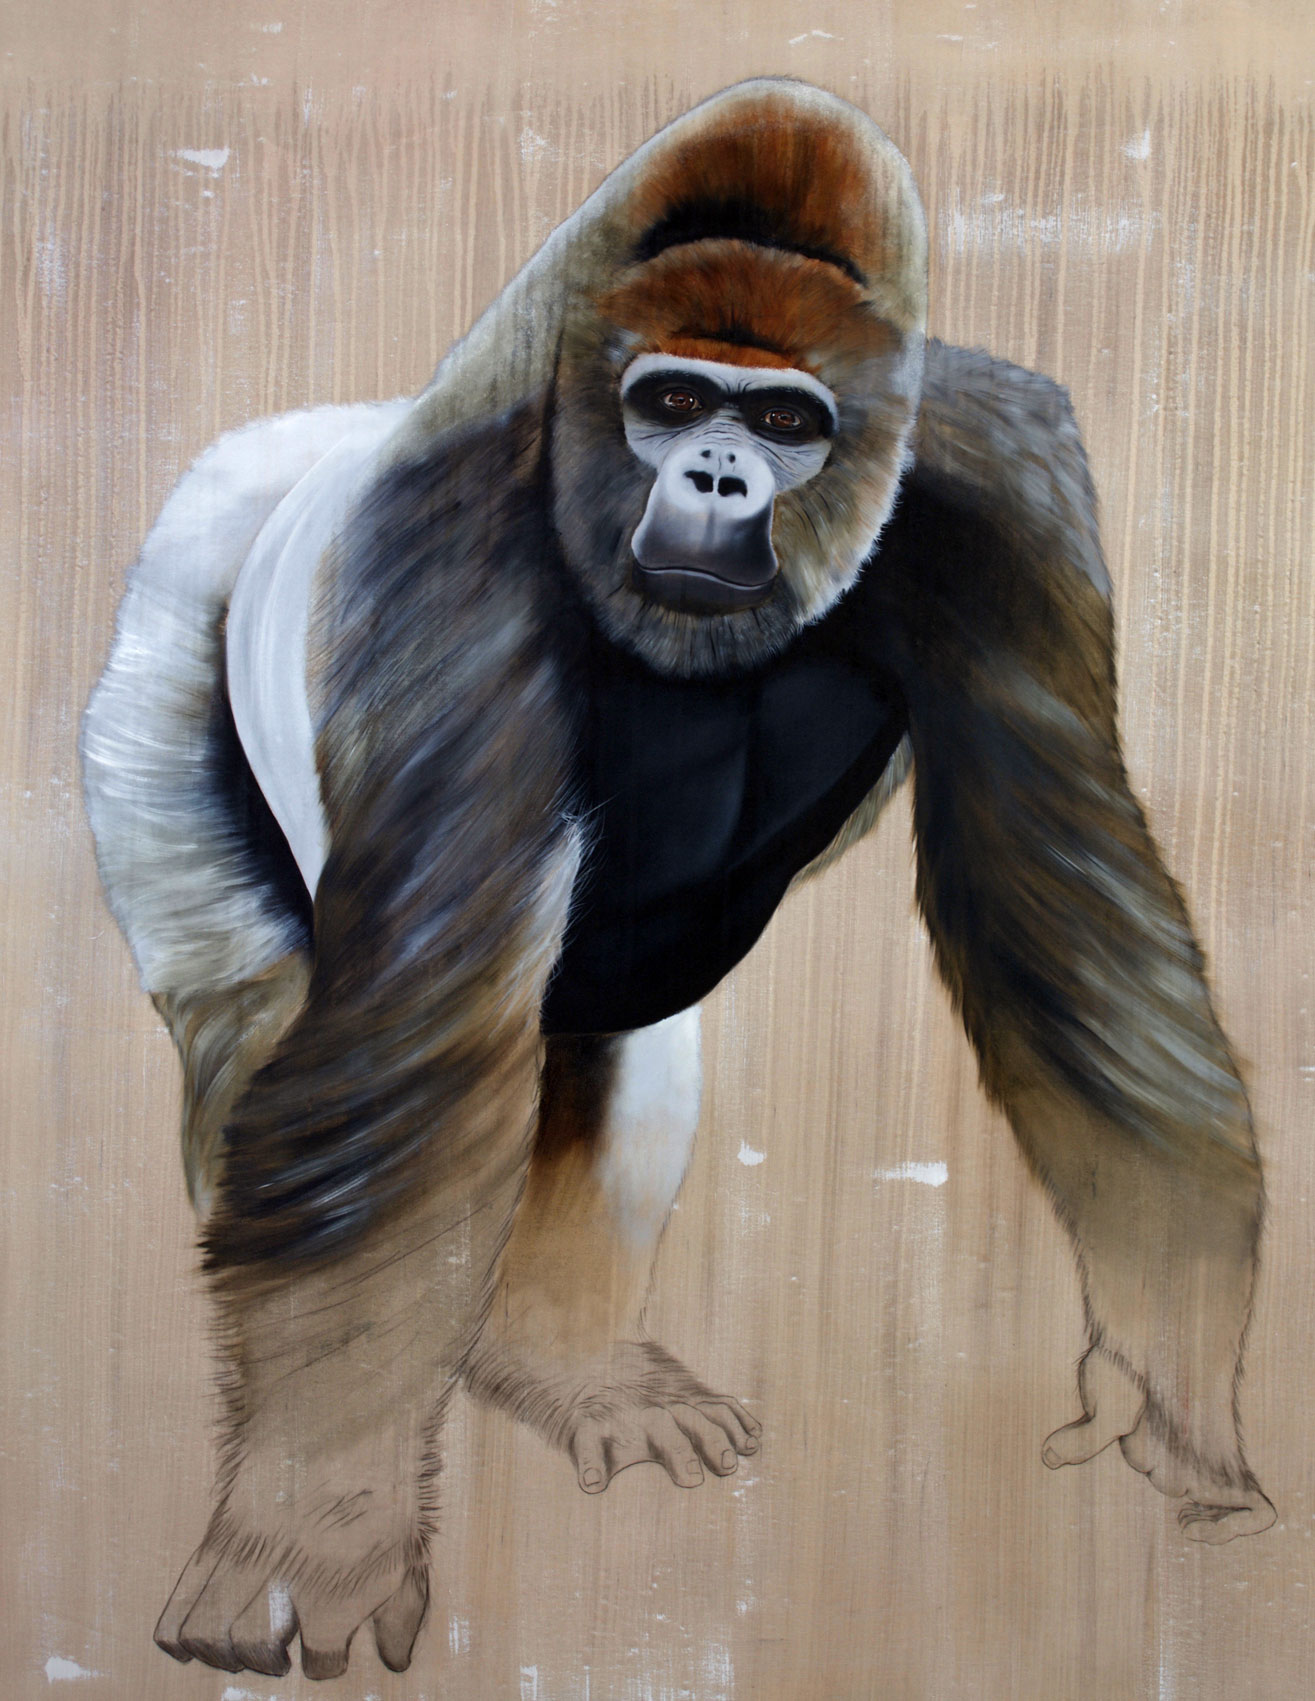 Gorilla gorilla  gorille-gorilla-primate-dos-argenté-singe-hominoïdes-extinction-protégé-disparition Thierry Bisch artiste peintre contemporain animaux tableau art décoration biodiversité conservation 